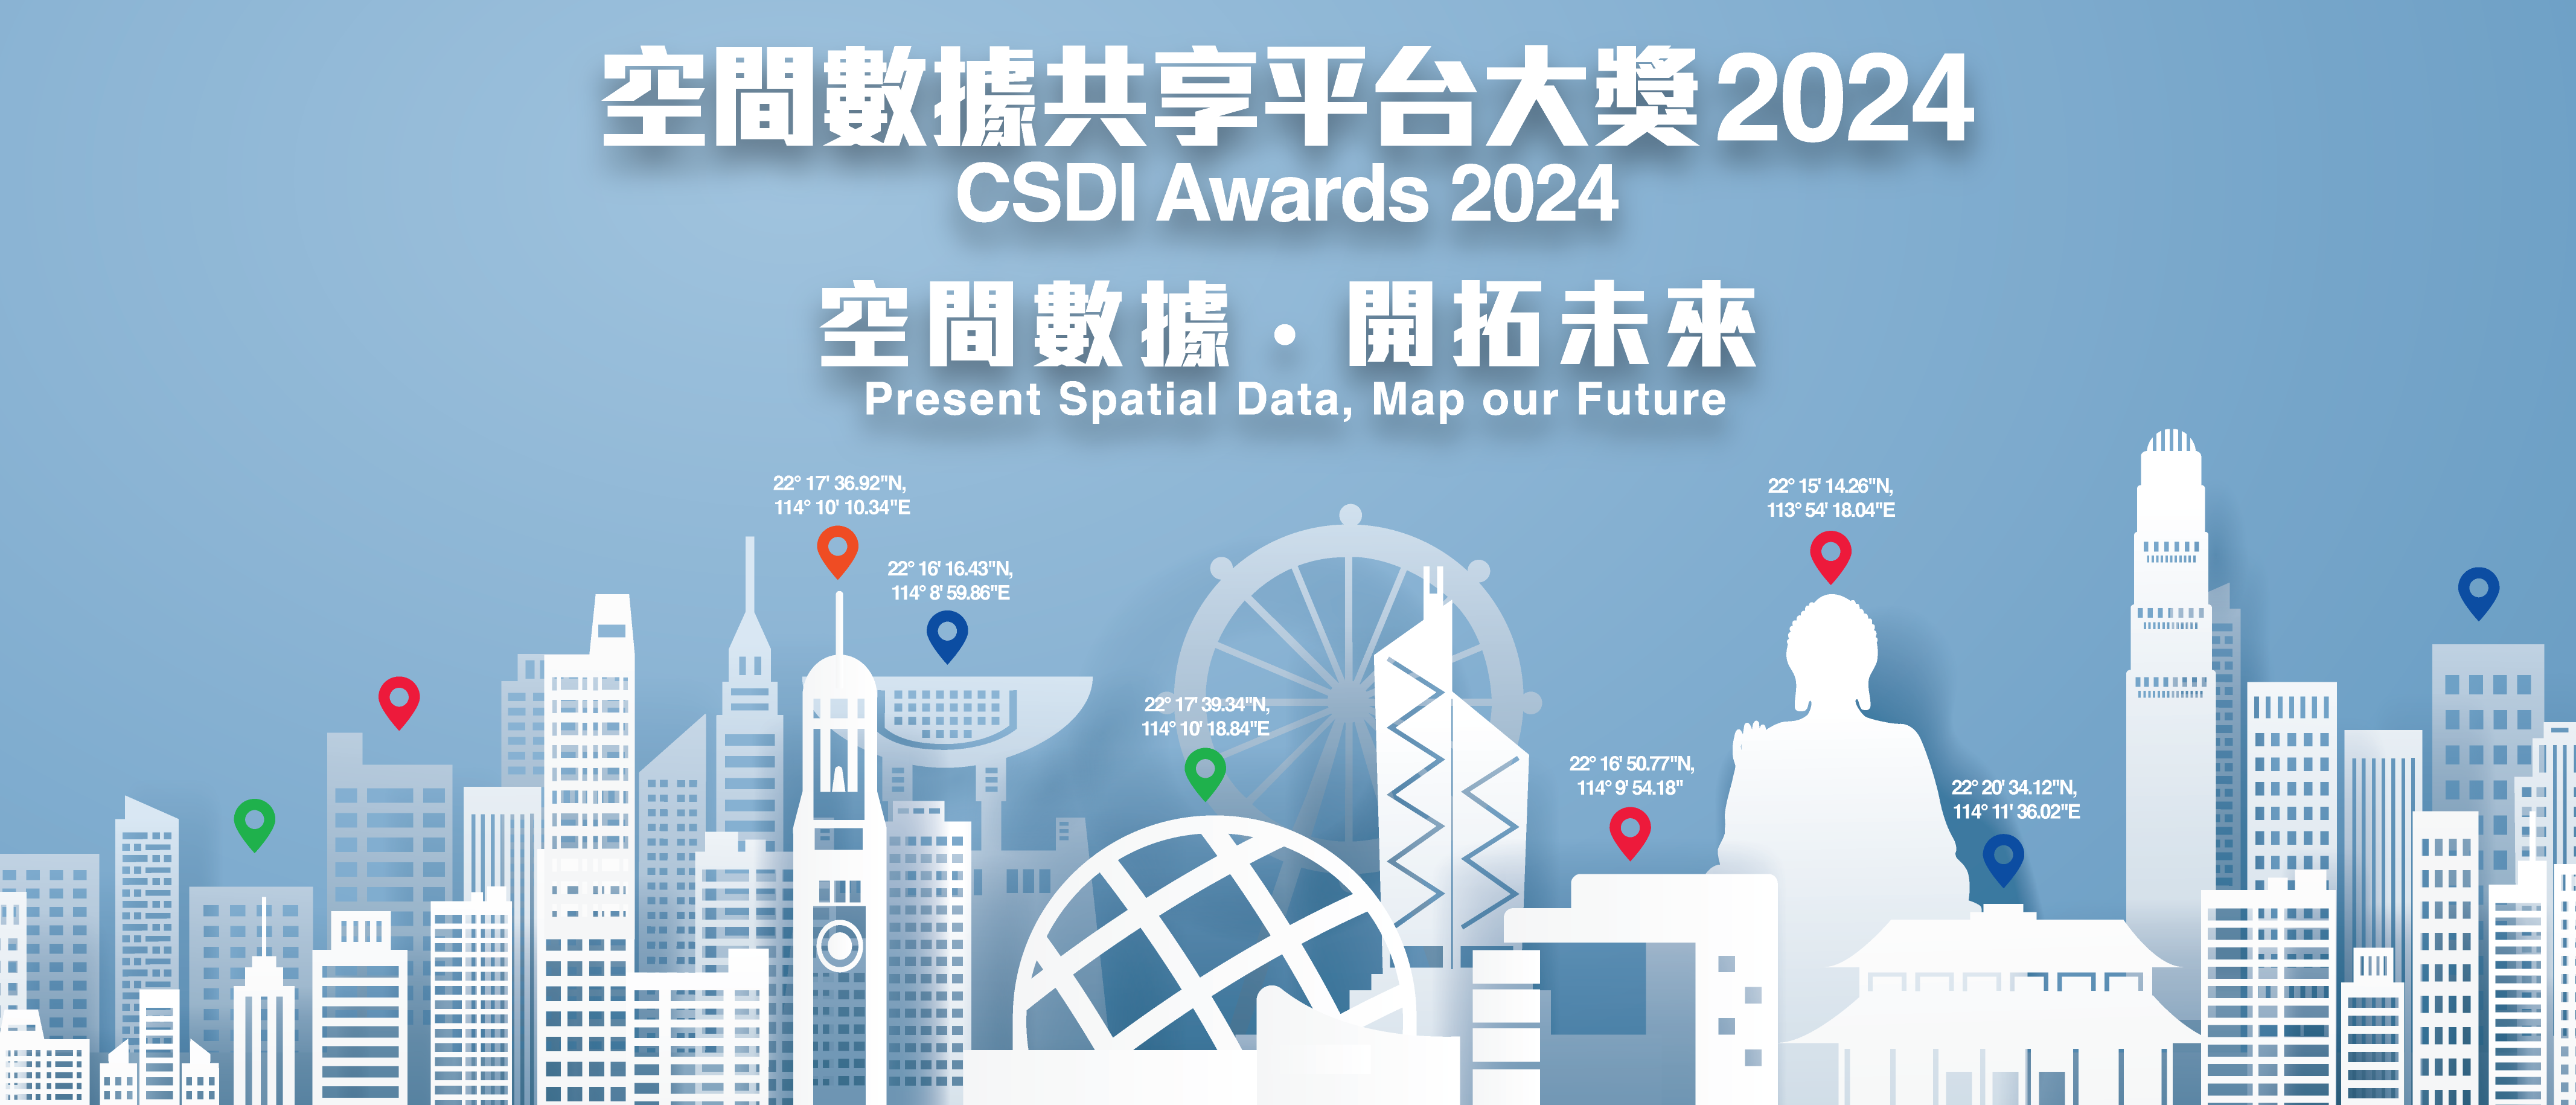 Poster of CSDI Awards 2024